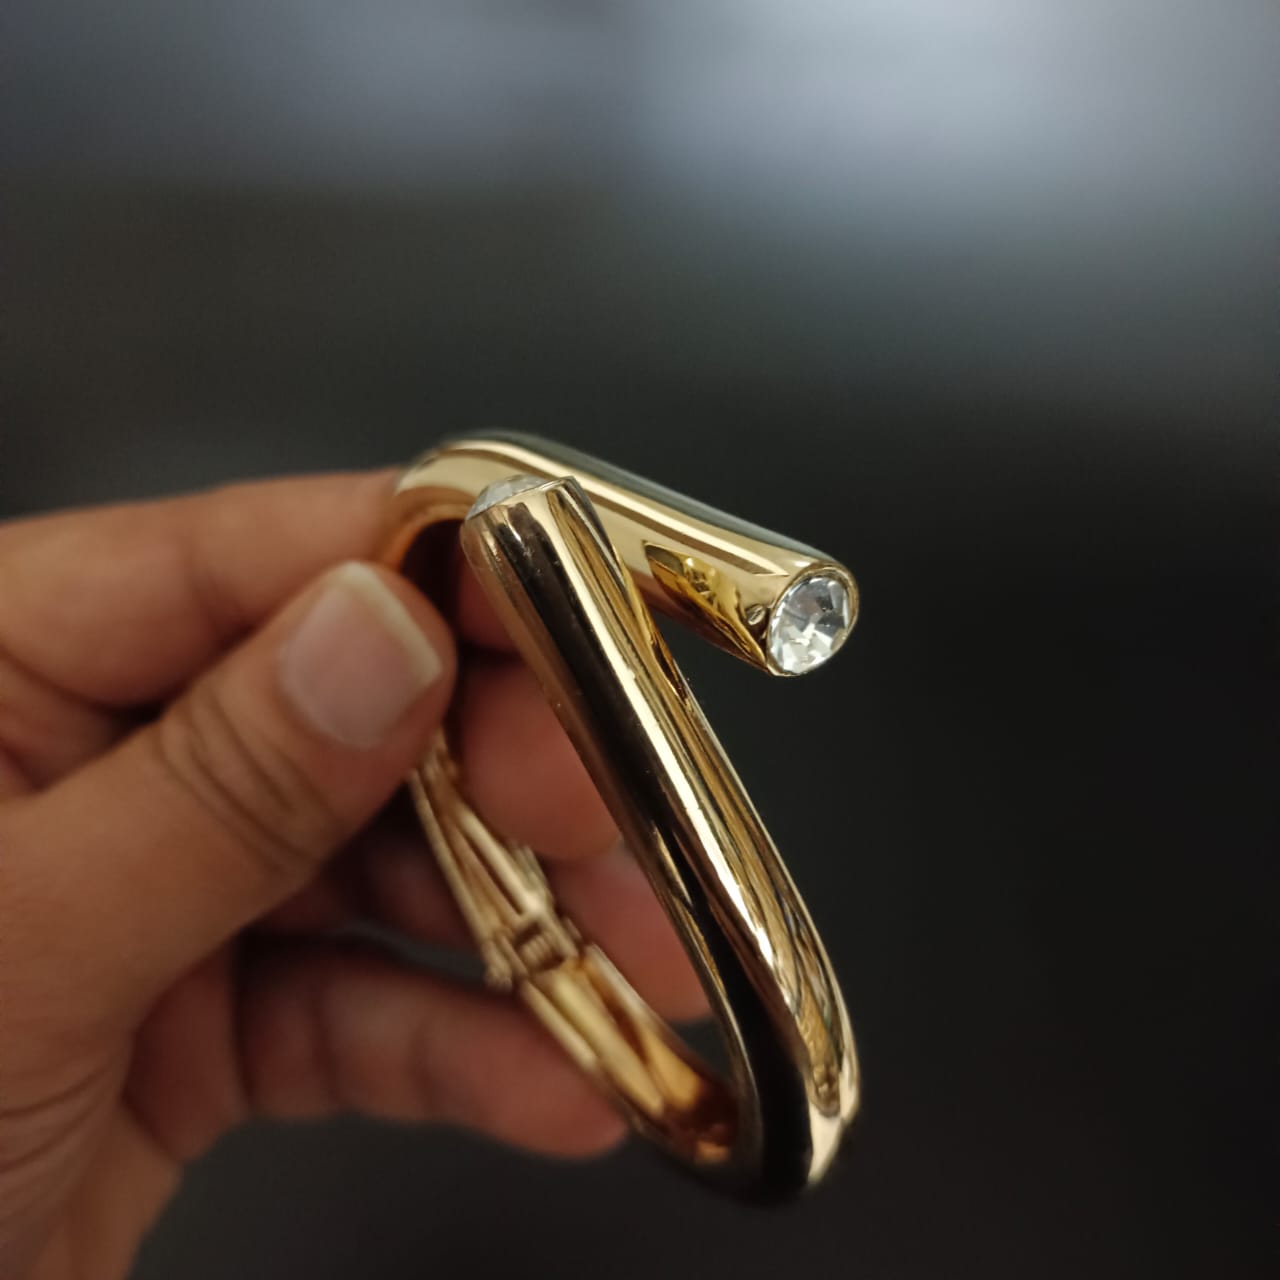 New Golden Twisted Design Bracelet For Women and Girl-